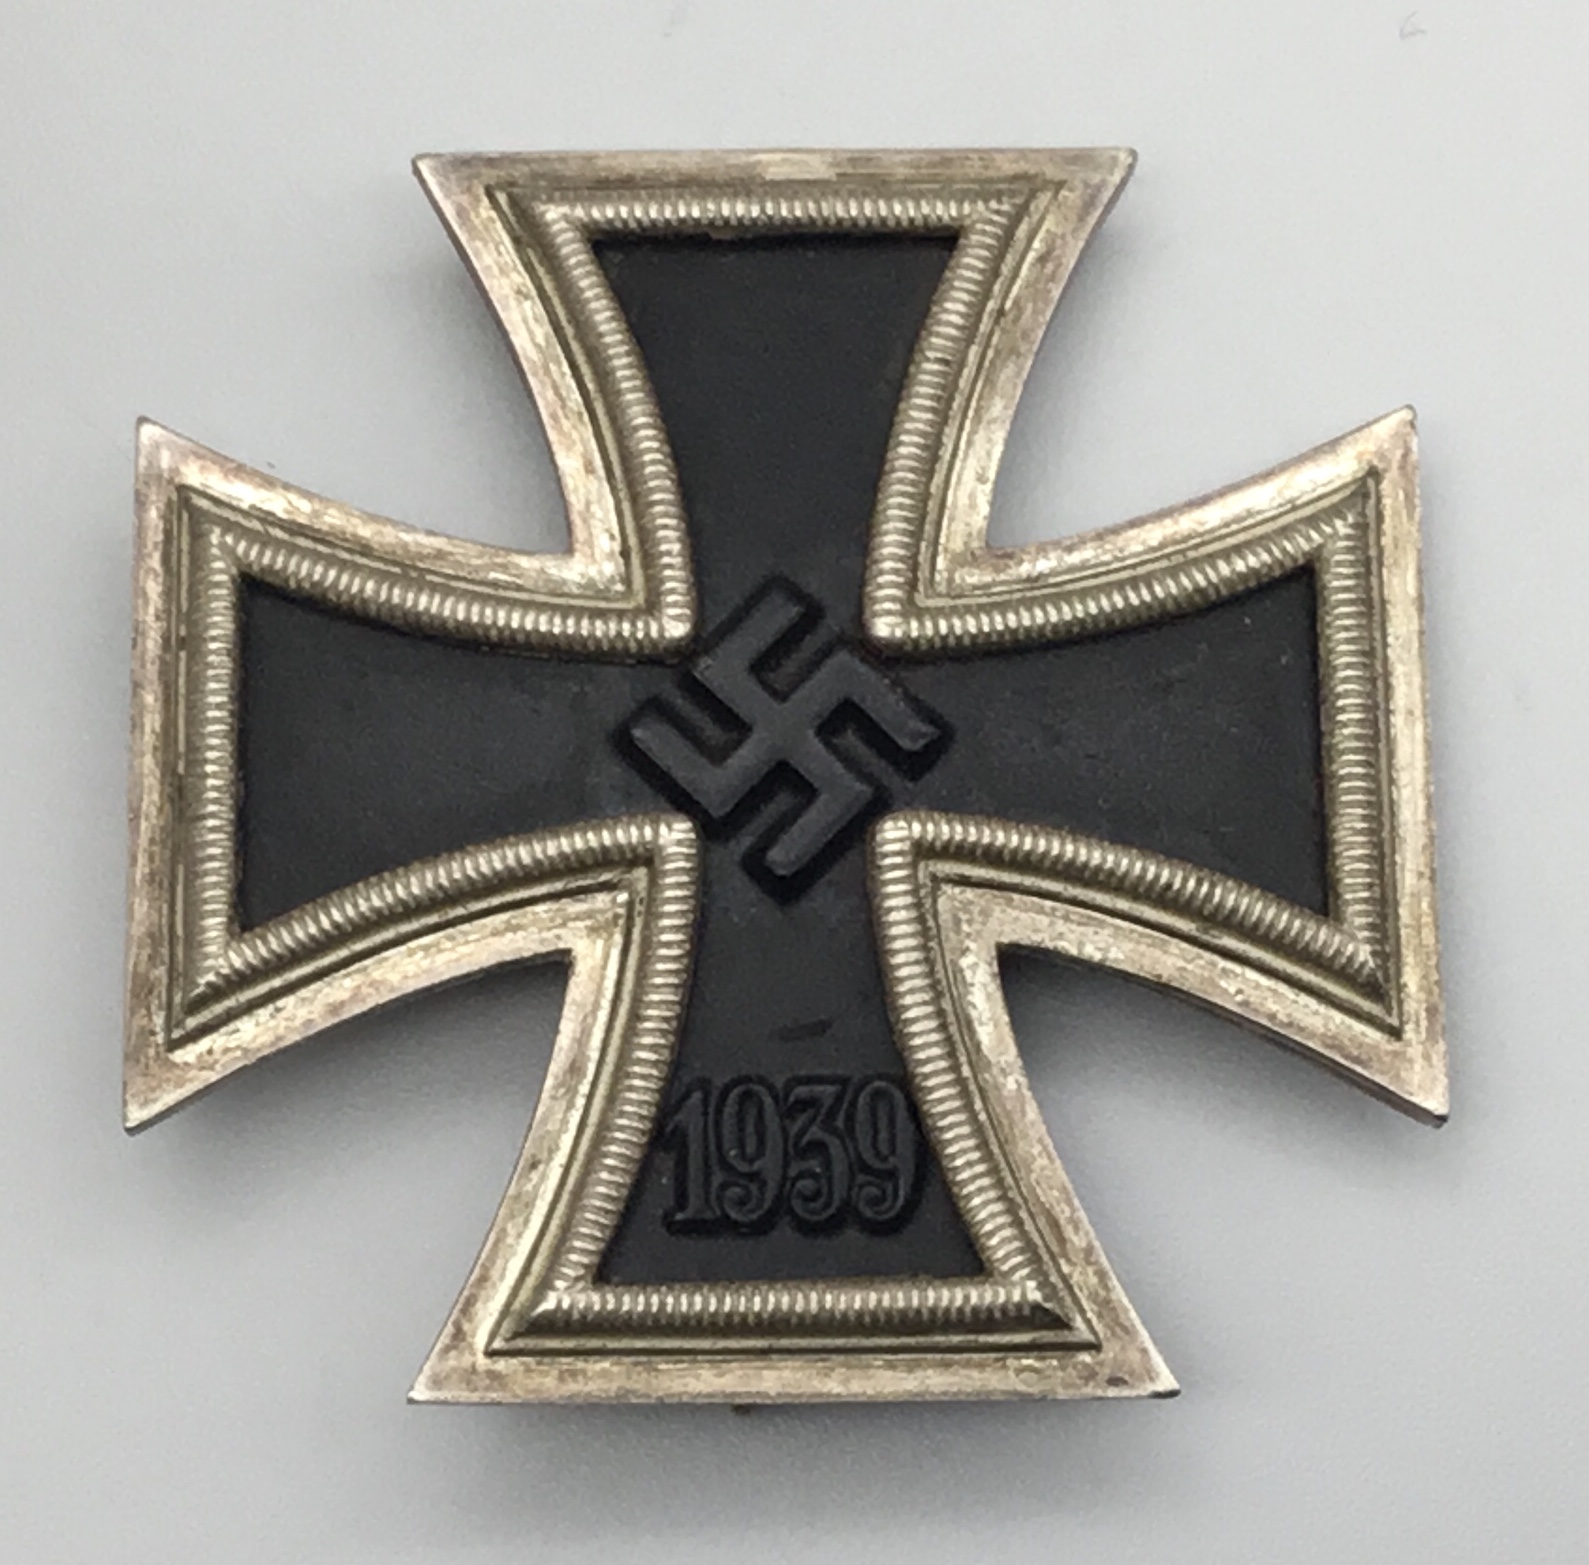 A WW2 era Vaulted Iron Cross 1st Class, by B.H.Meyer, Pforzheim. Usual 3 piece construction, with